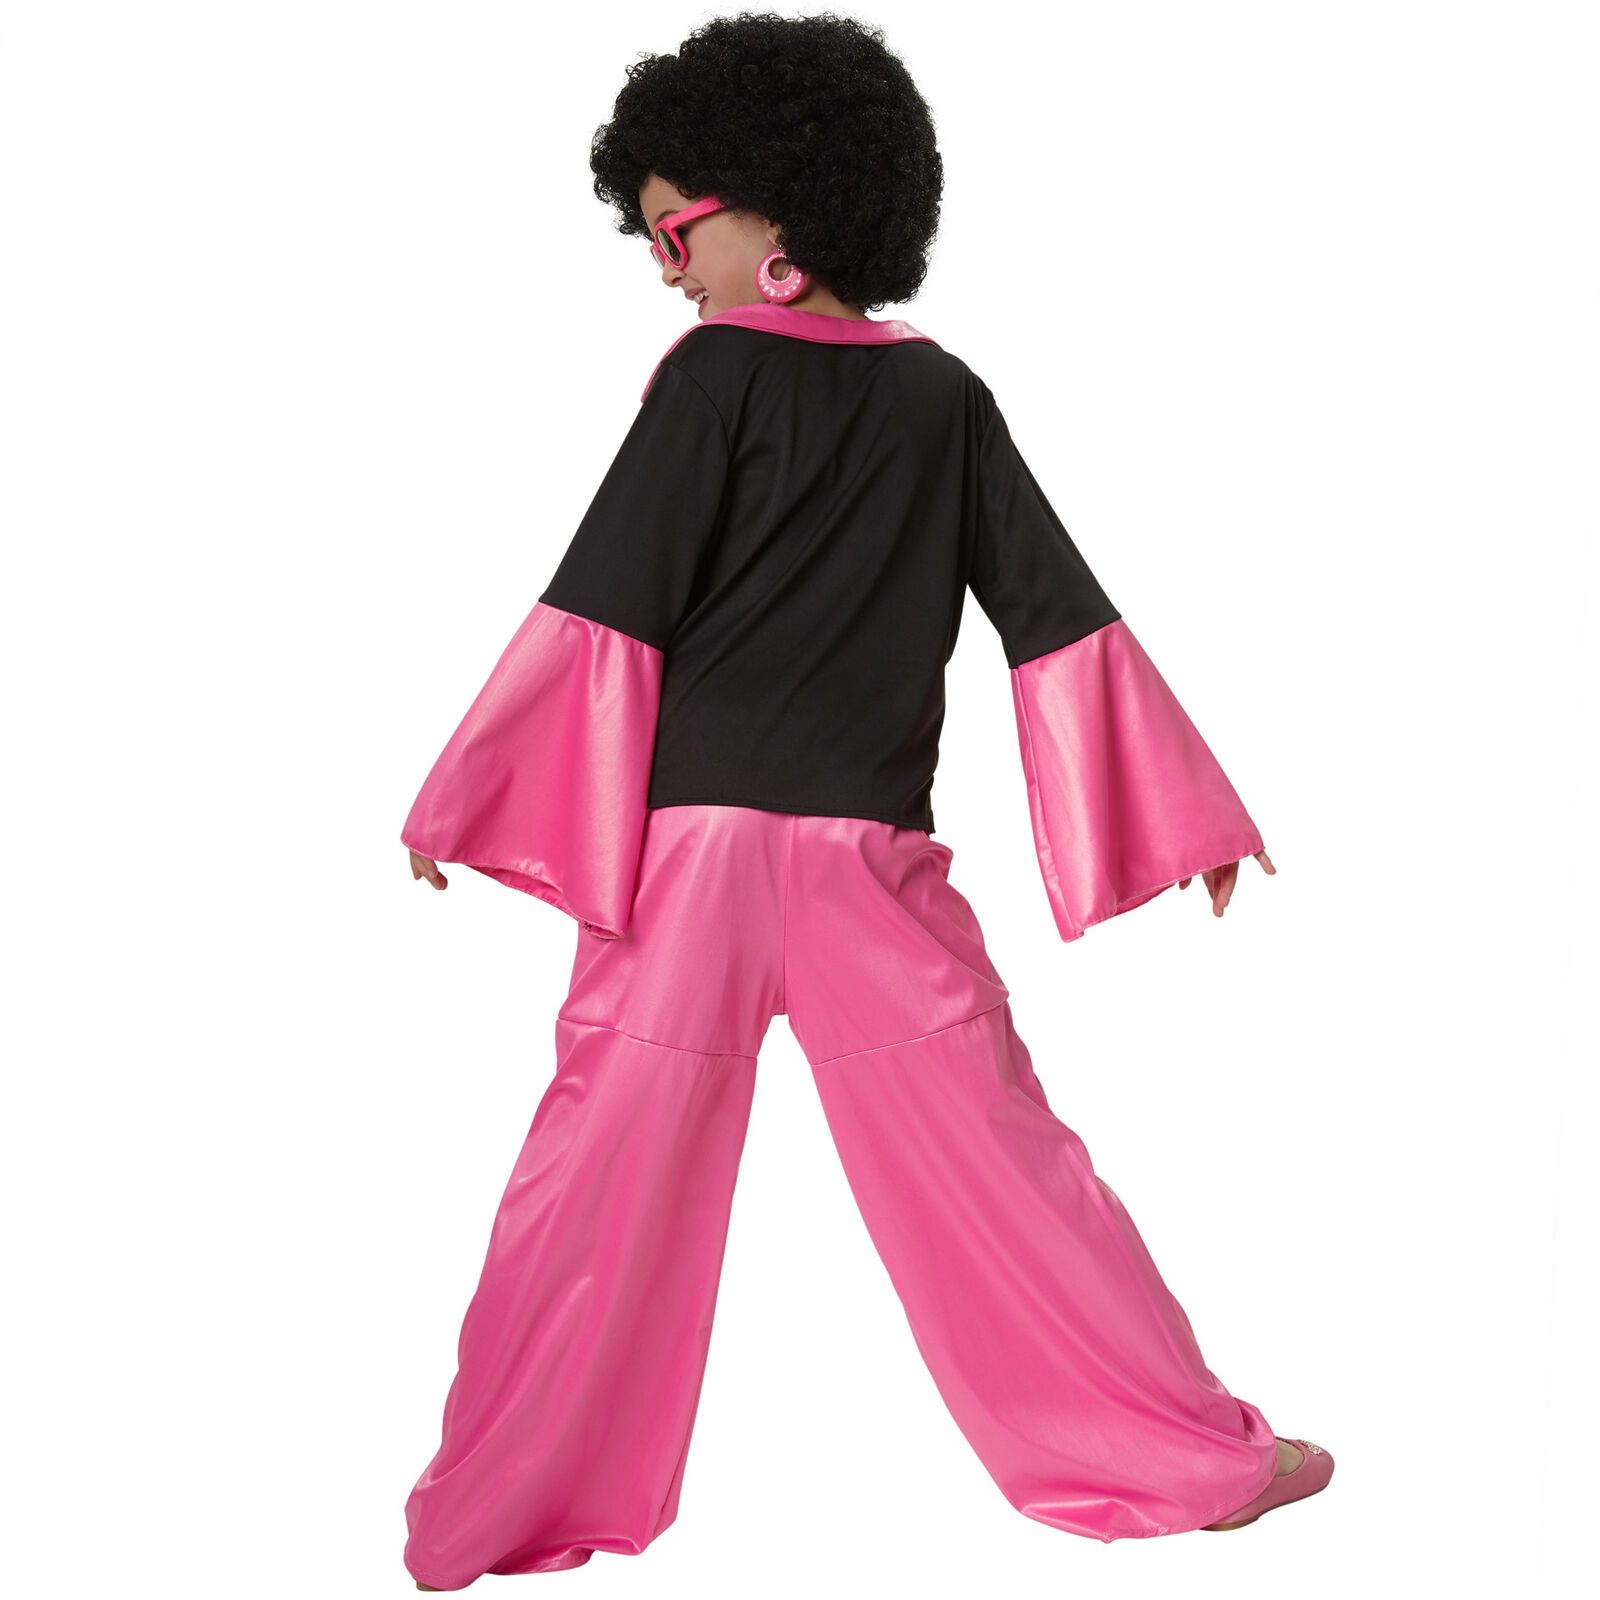 Kostüm Mädchen Disco Tänzer 70er 80er Schlaghose Pink Party Fasching Karneval